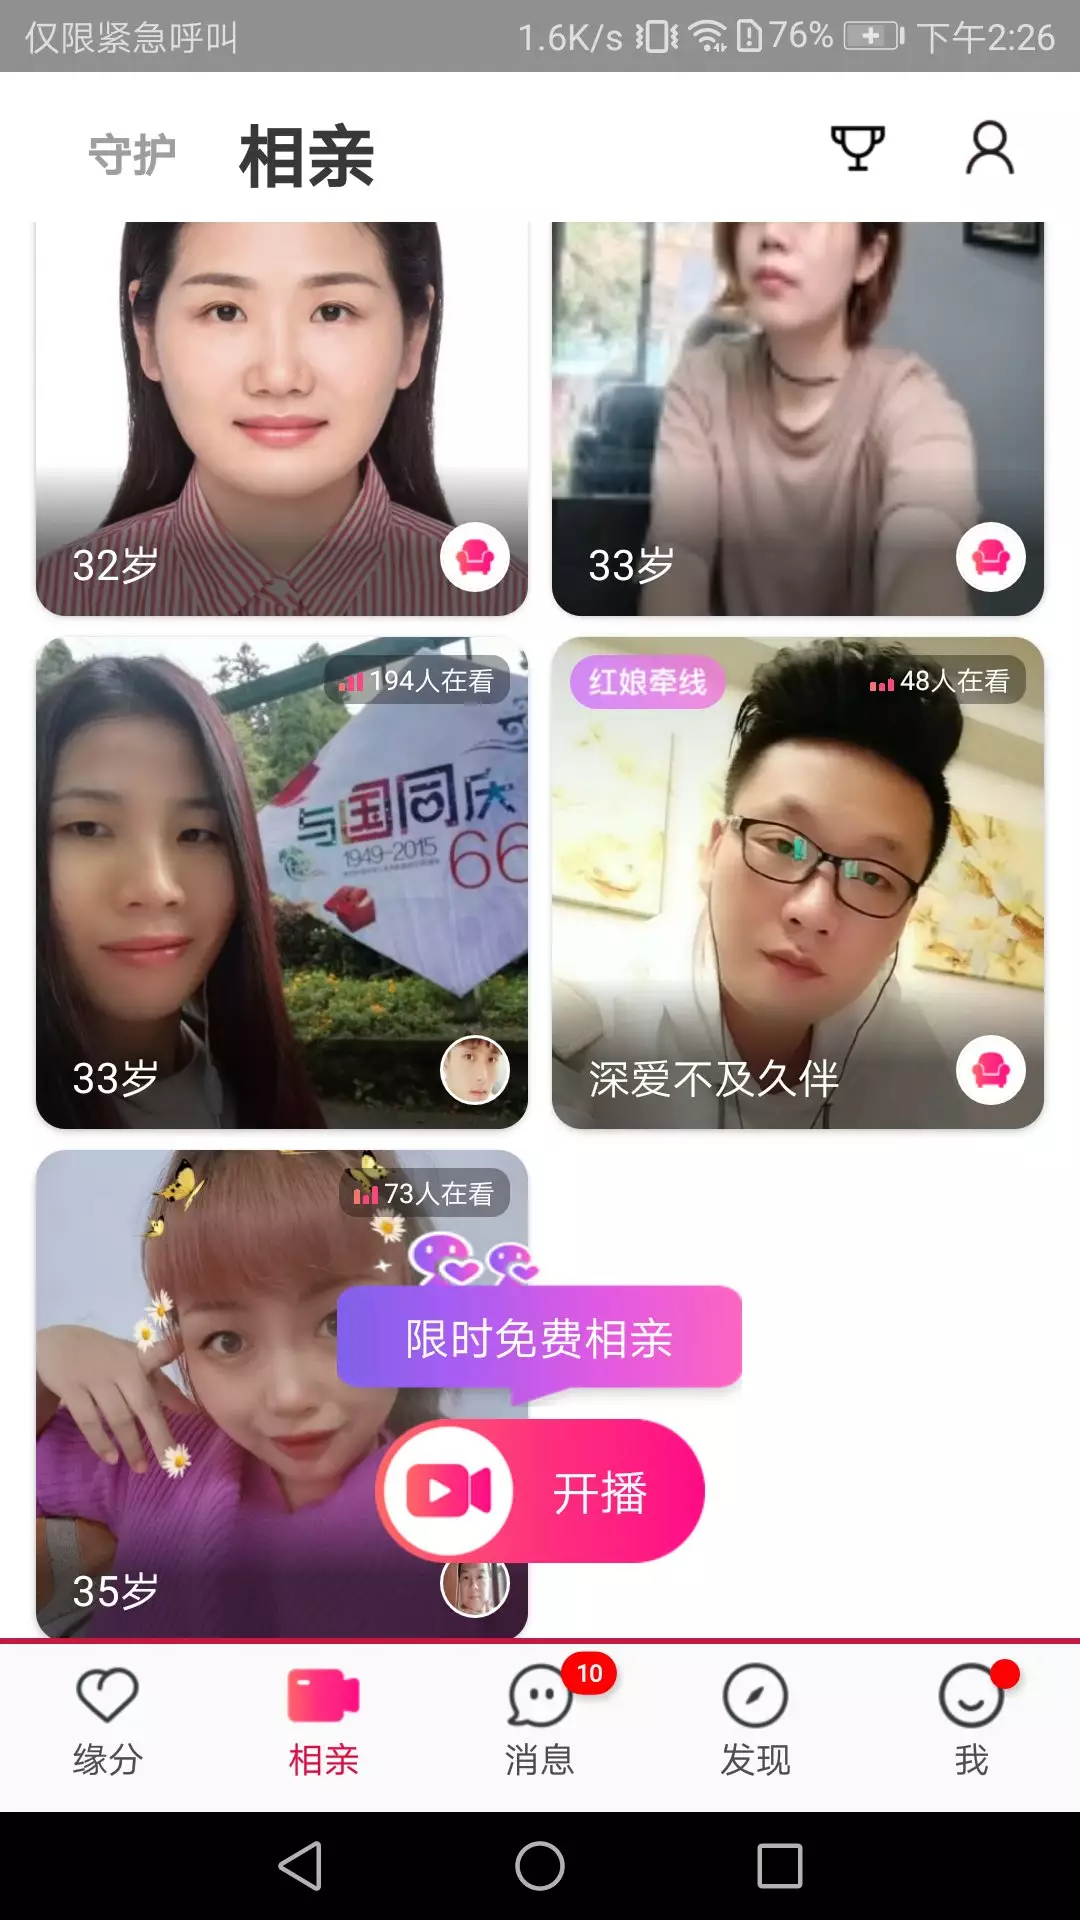 2、免费征婚app:中国10大征婚约会app？